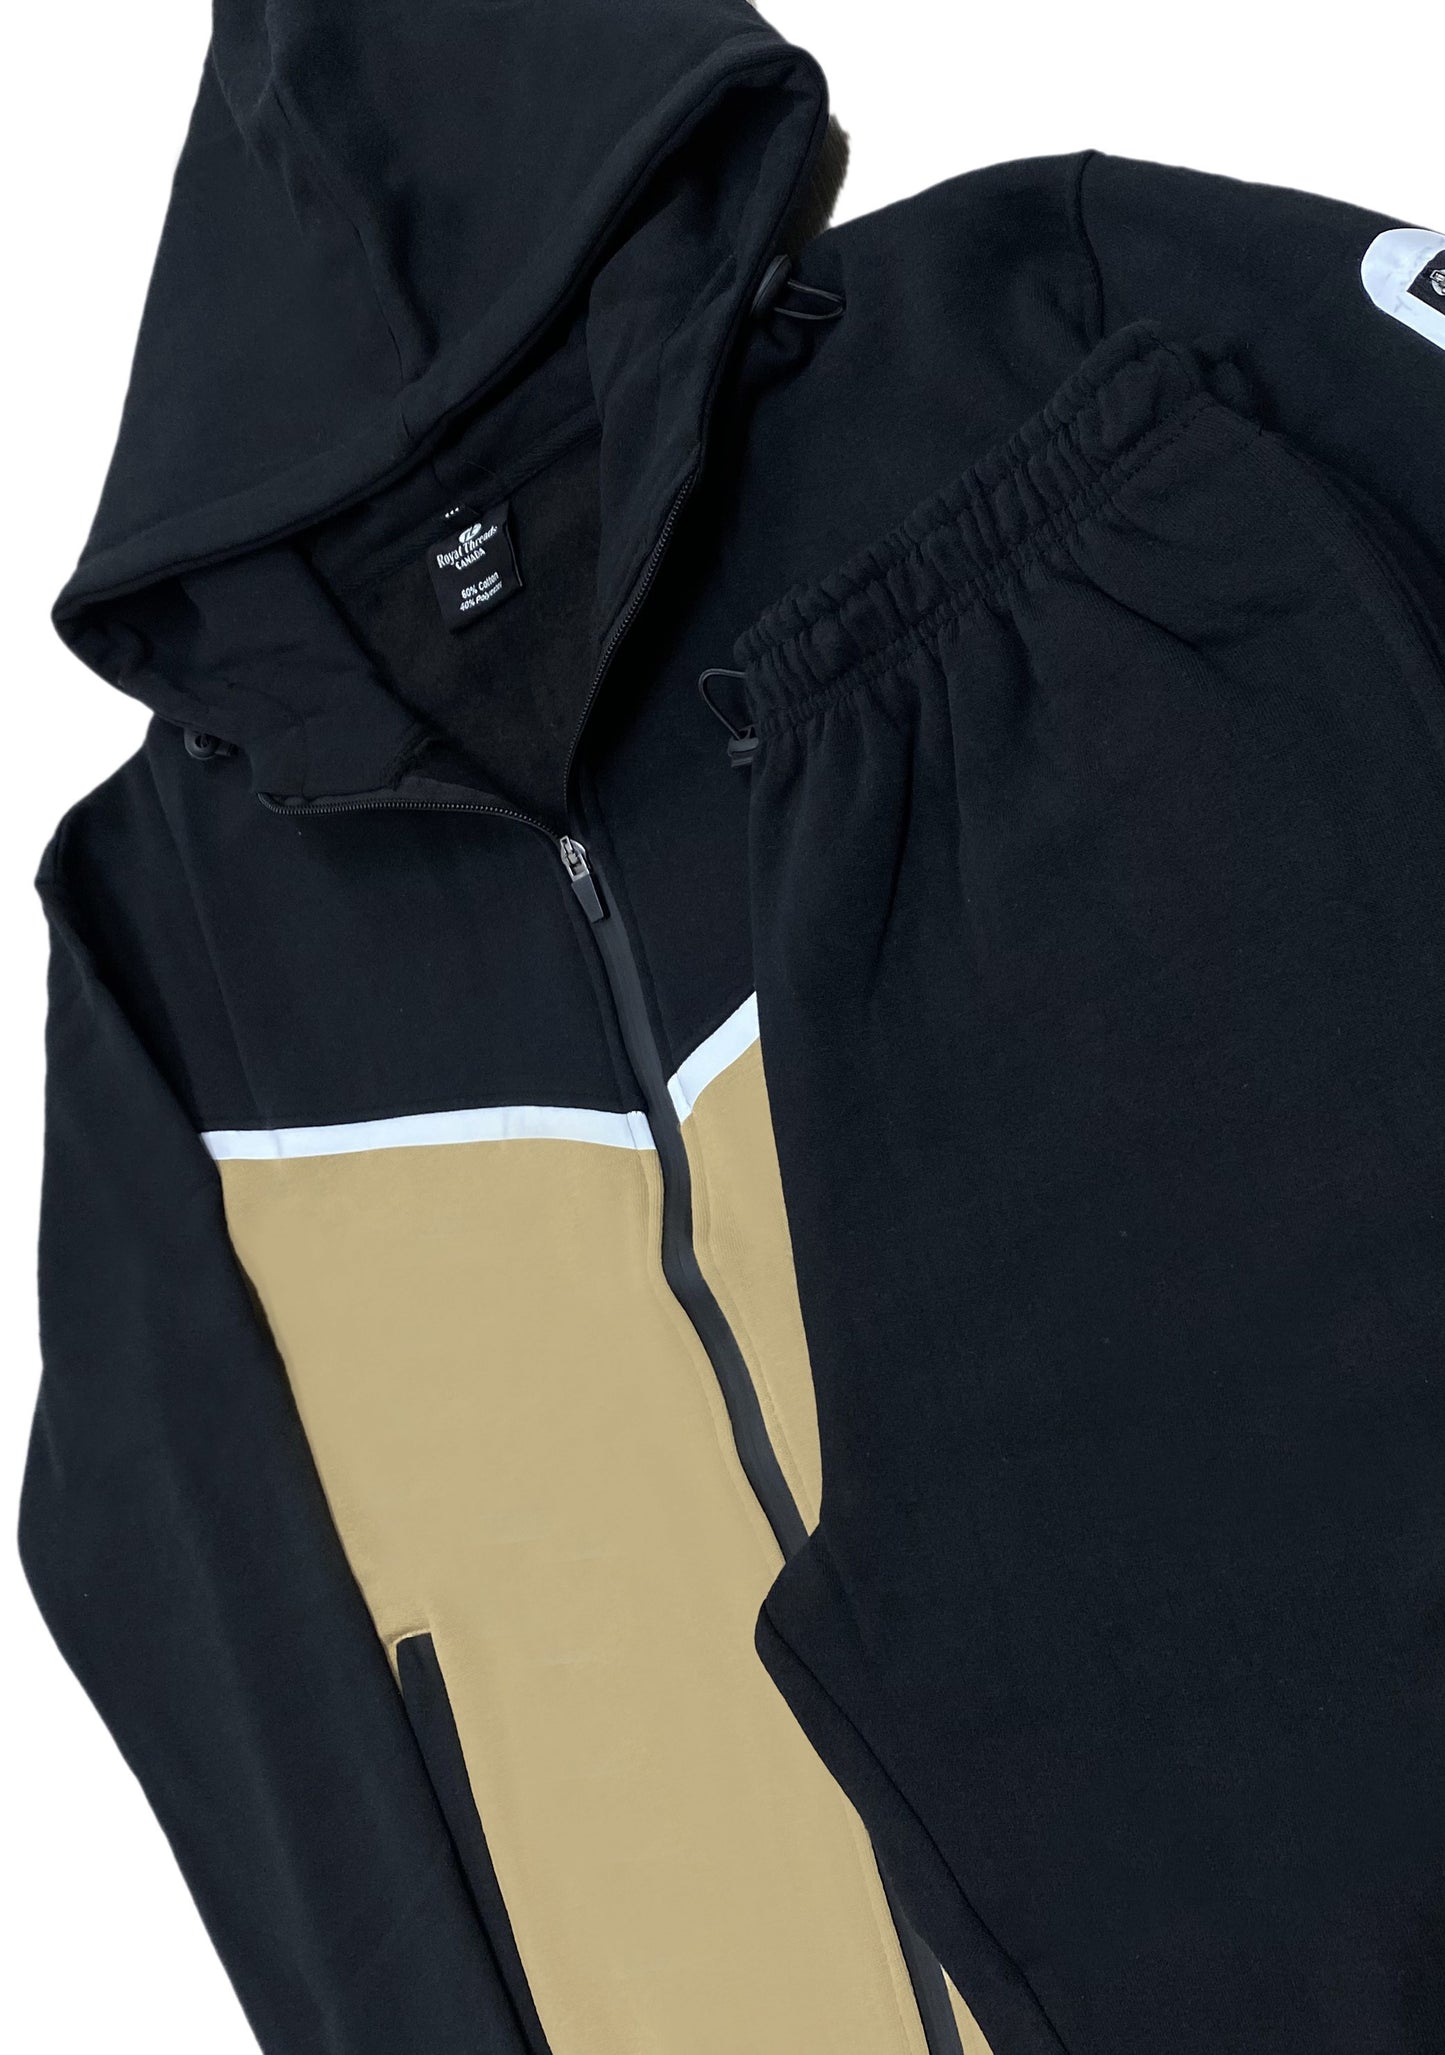 Men’s Dynamic Fleece Sweat suit Heavy Duty Winter Sweat Jacket with Fleece Sweatpants